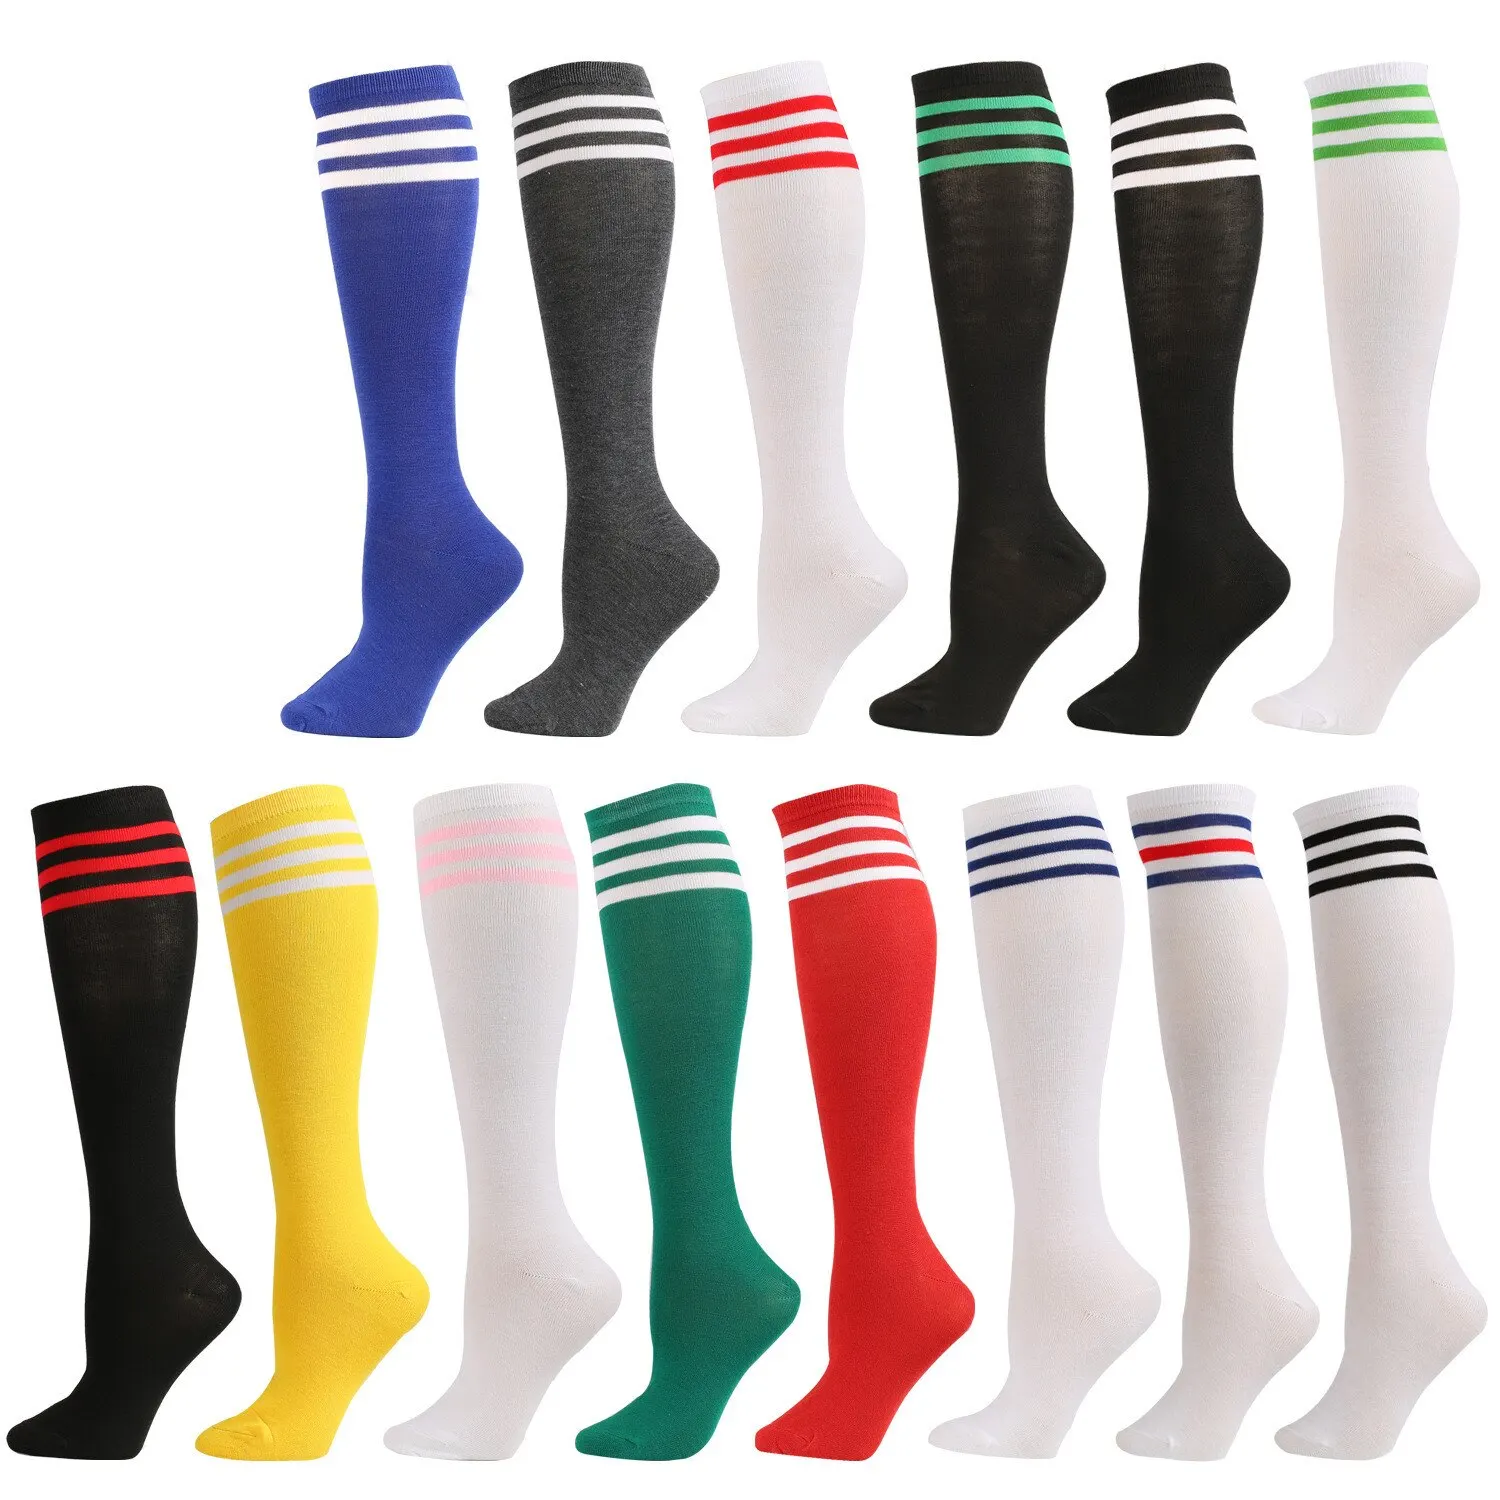 

Pairs Socks Long Football Slip Tube 2 Non Knee High Stockings Socks Striped Soccer Socks Running Sports Socks